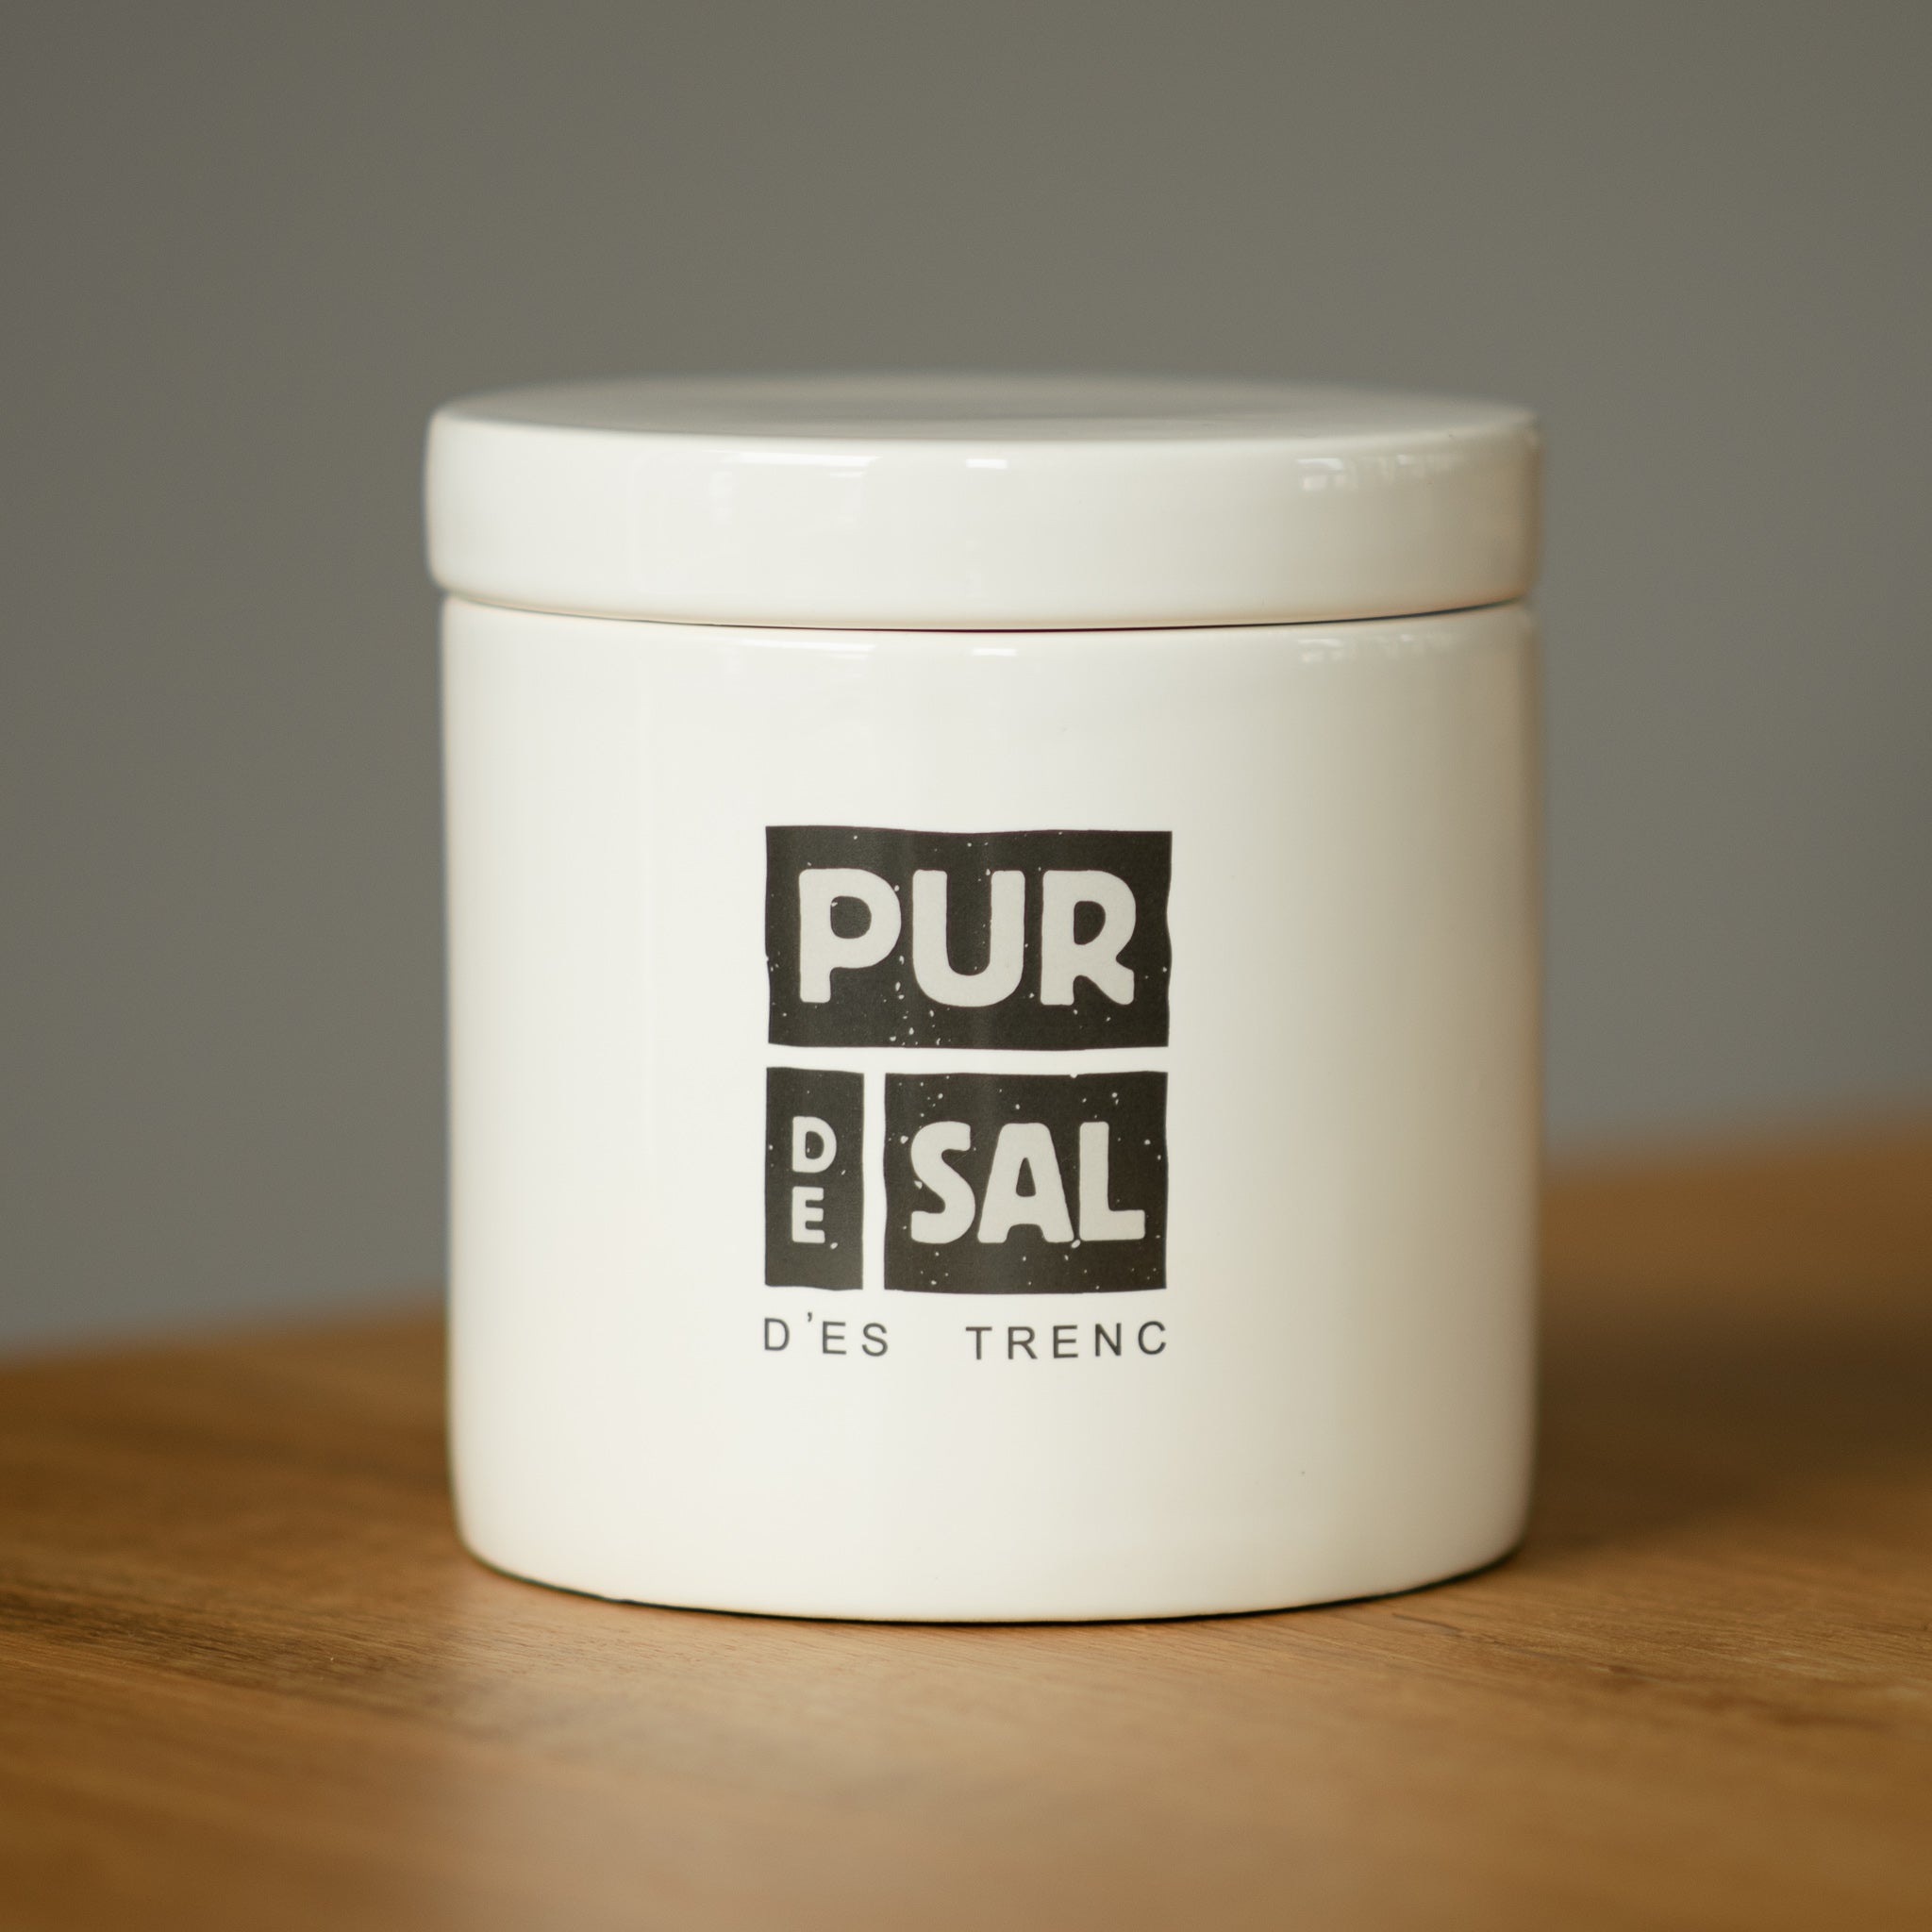 Lata de cerámica Pur de Sal